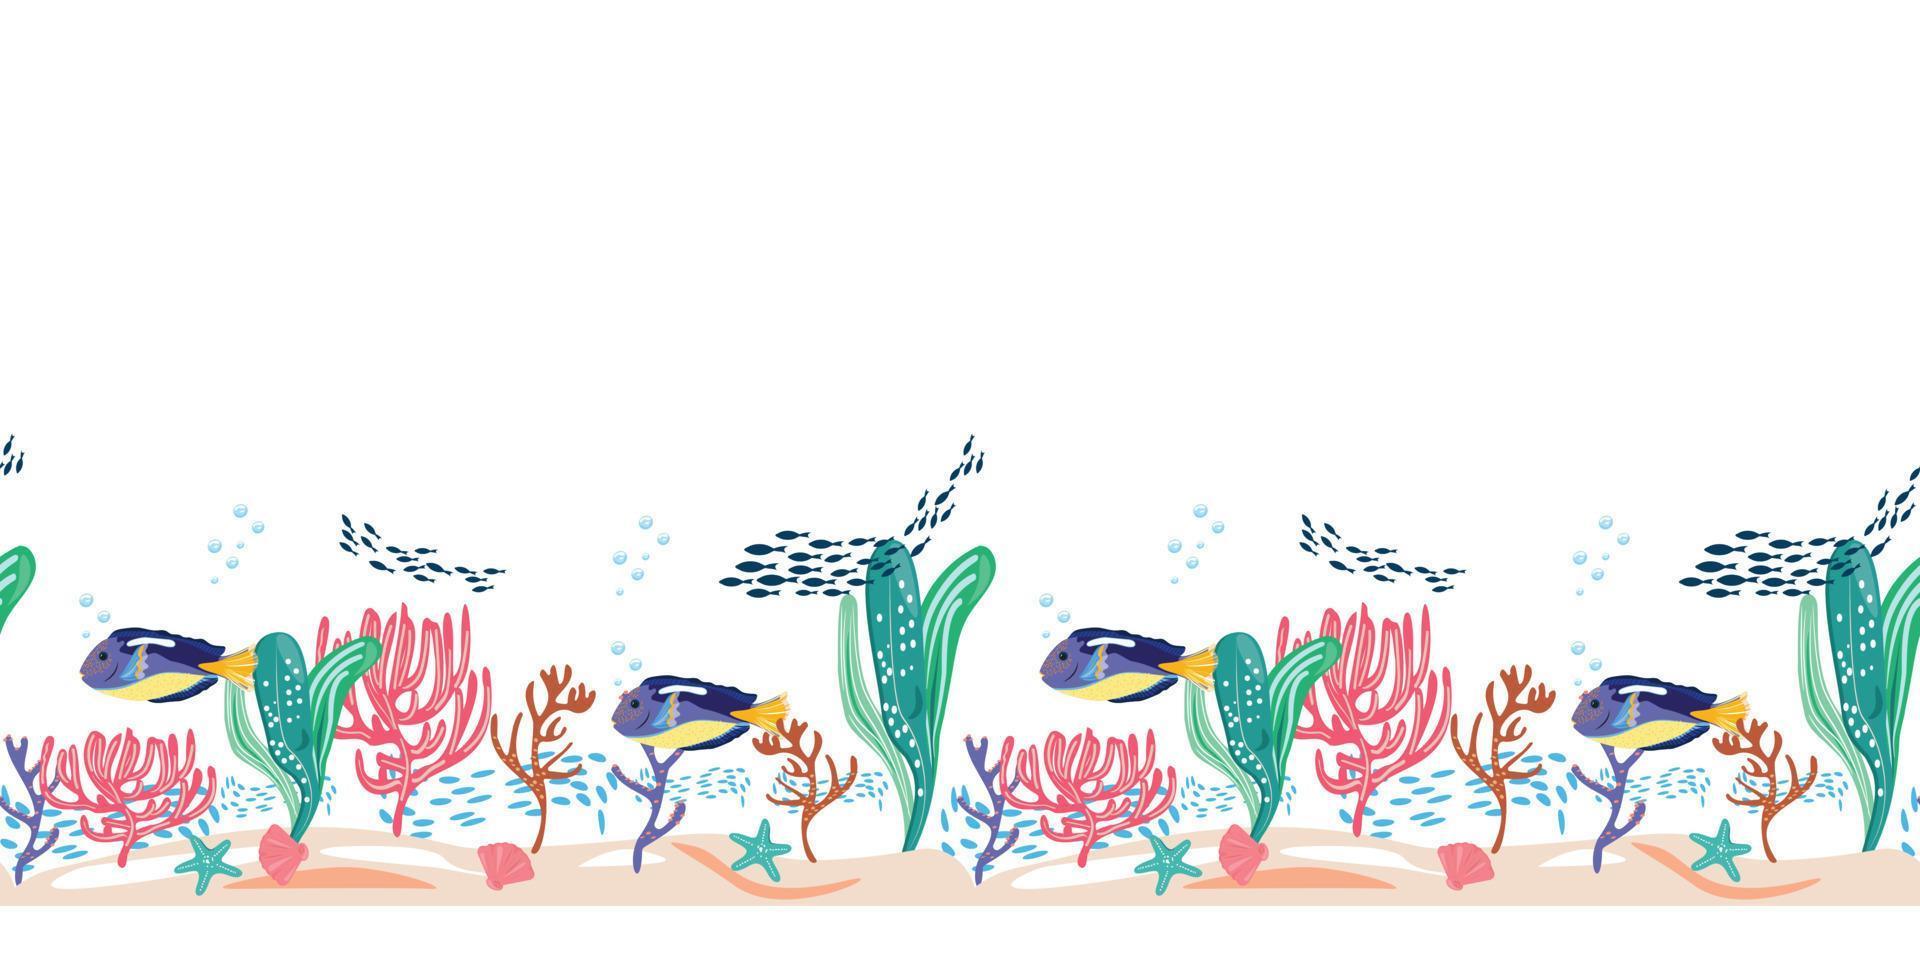 aquário de peixes com peixes blue tang, estrelas do mar, conchas e corais. sem costura padrão horizontal com peixes e itens subaquáticos em fundo branco. para têxteis, cartões, superfícies de design, embalagens. vetor